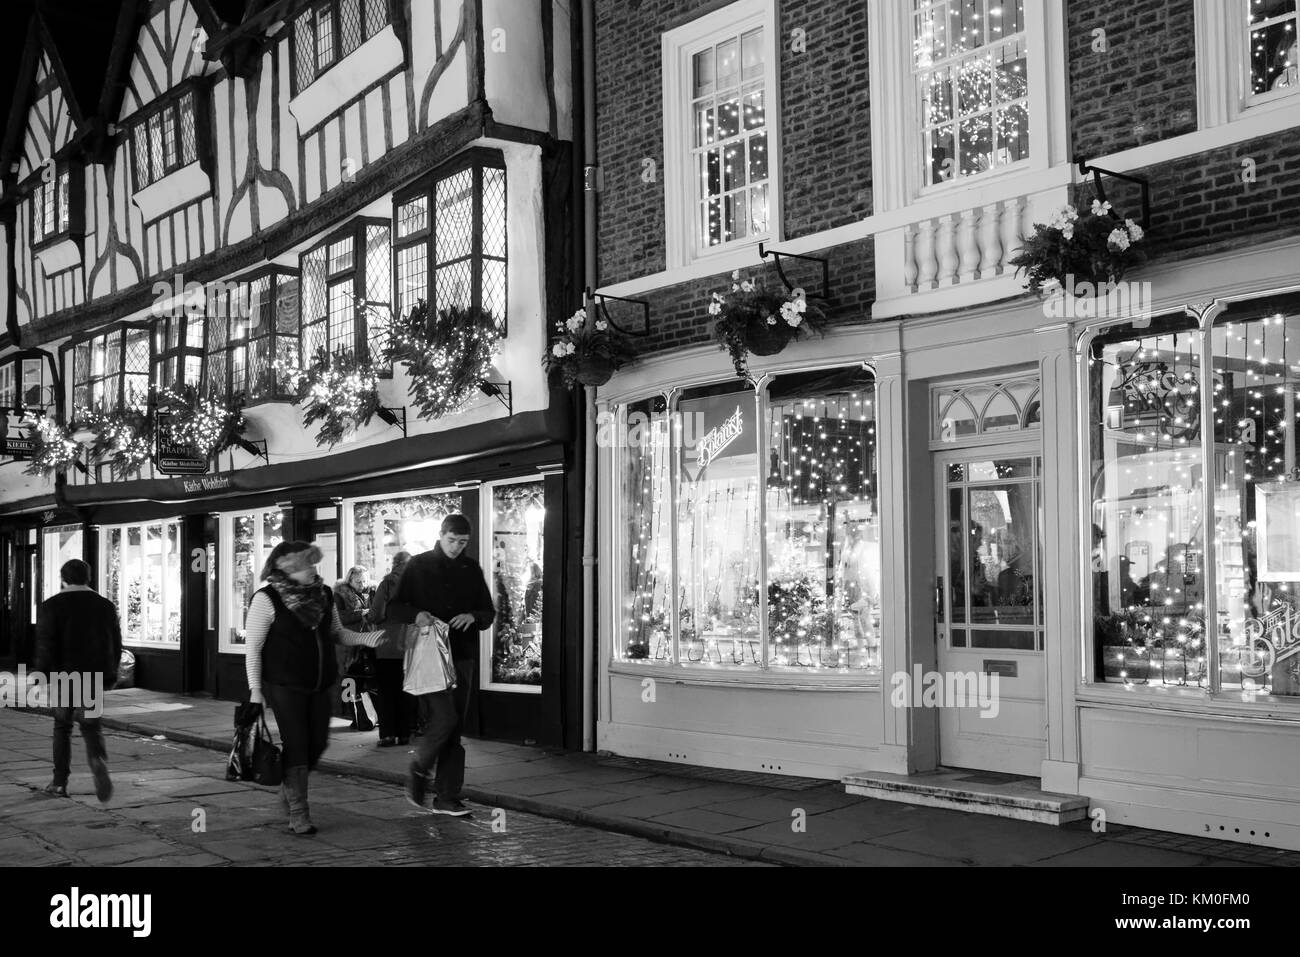 Brillantes luces de Navidad a lo largo de la antigua calle, Stonegate, York, reino unido Foto de stock